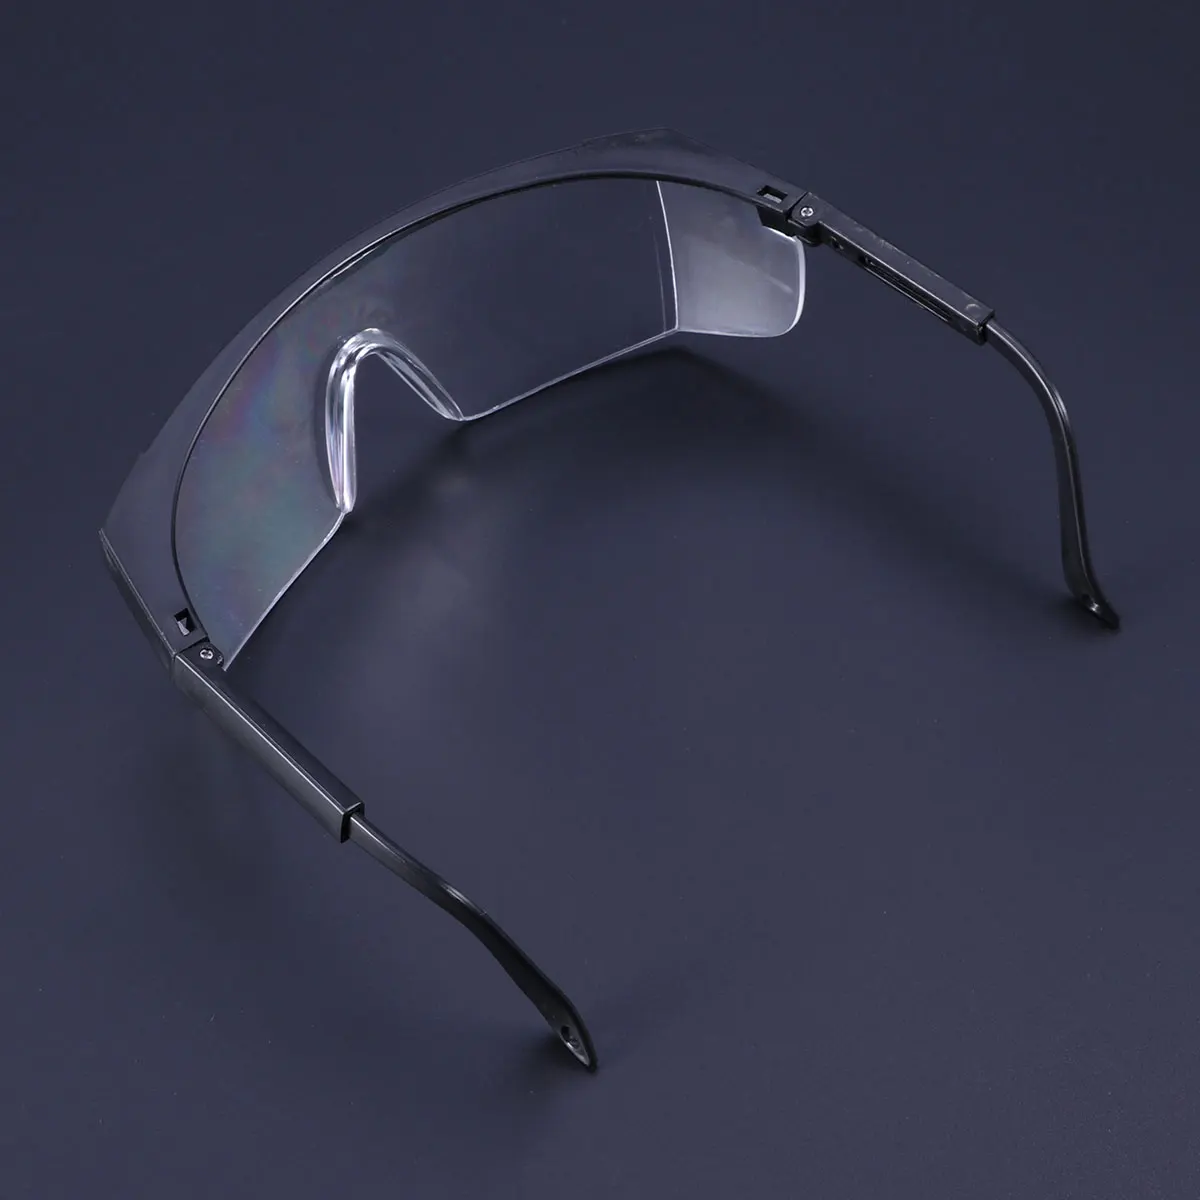 1 шт. защитные очки для ПК УФ-защита мотоцикл очки пыль ветер брызг ударопрочность для езды на велосипеде